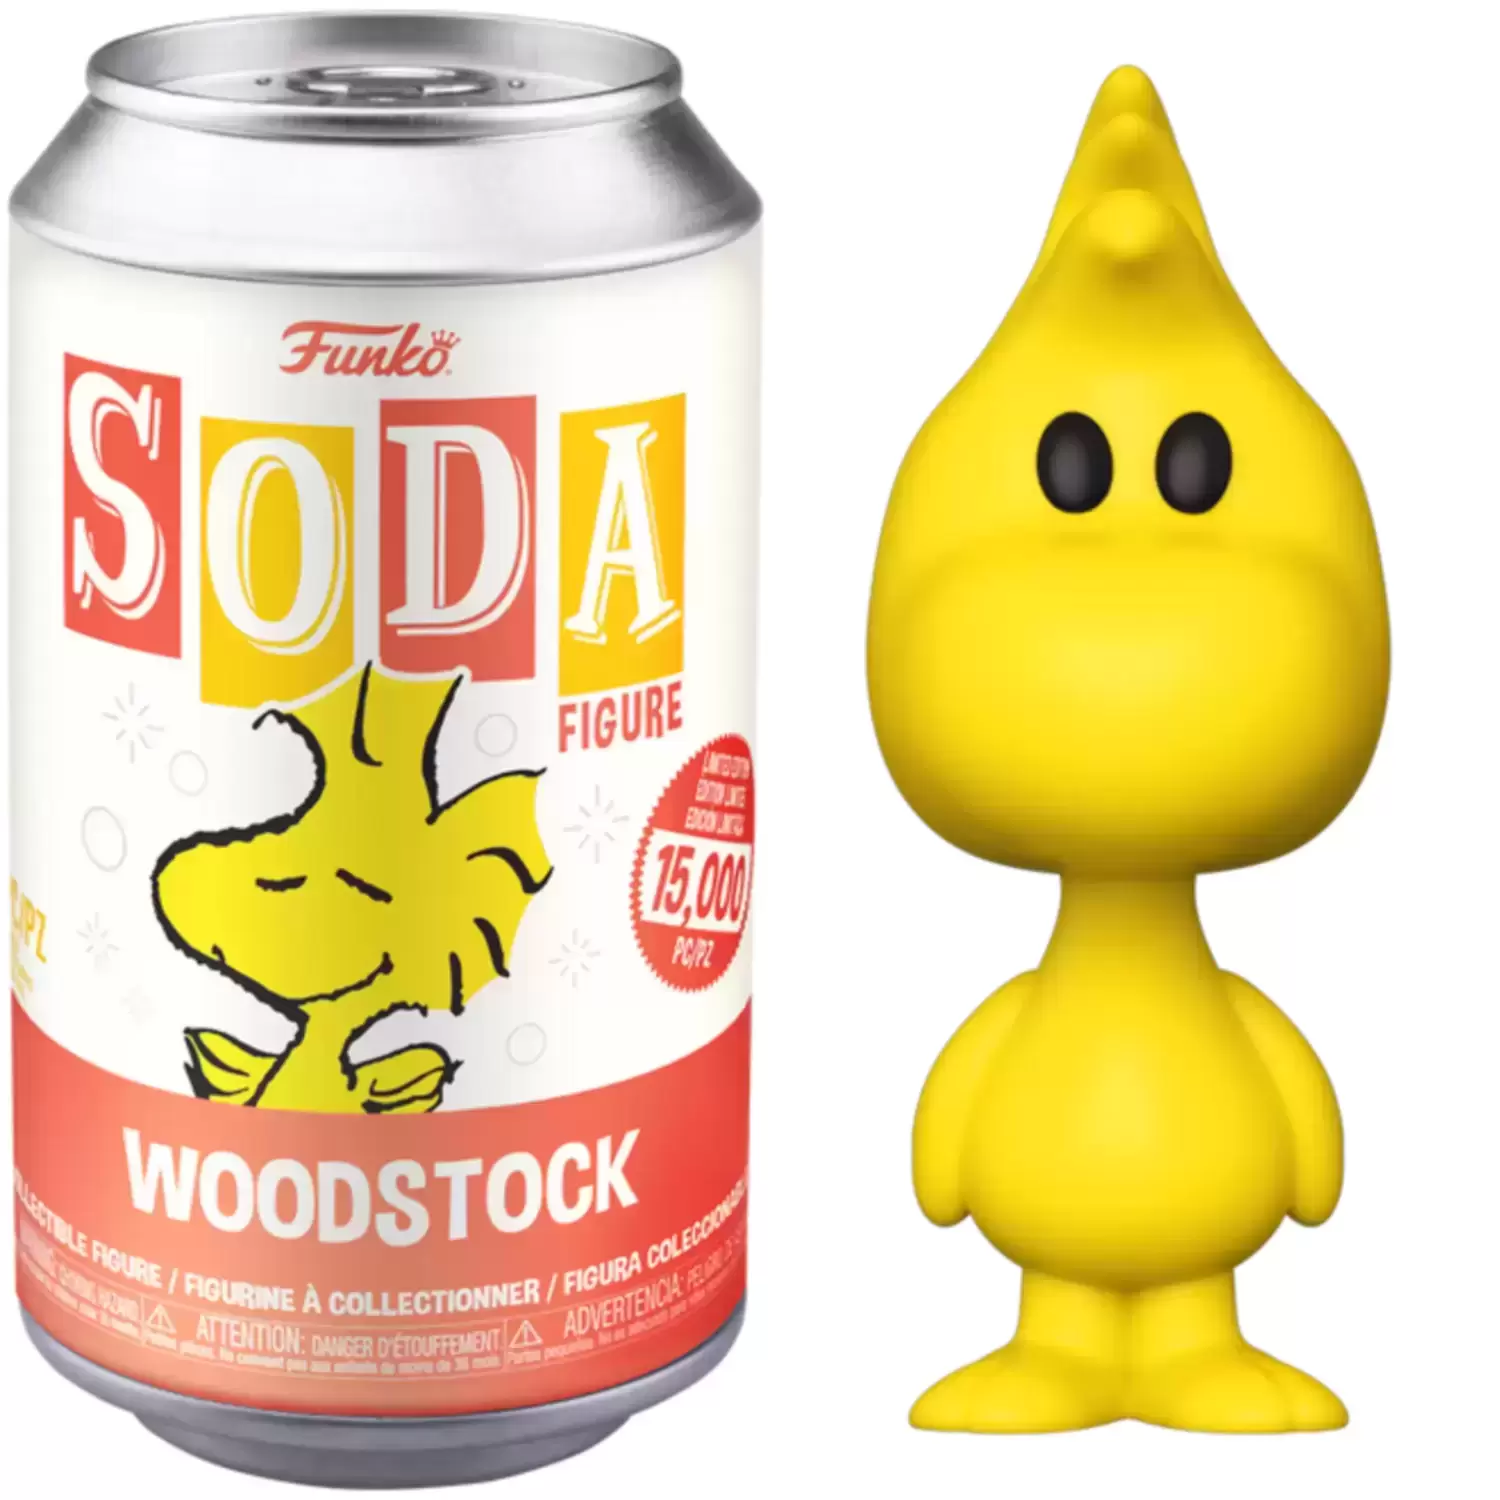 Vinyl Soda! - Peanuts - Woodstock